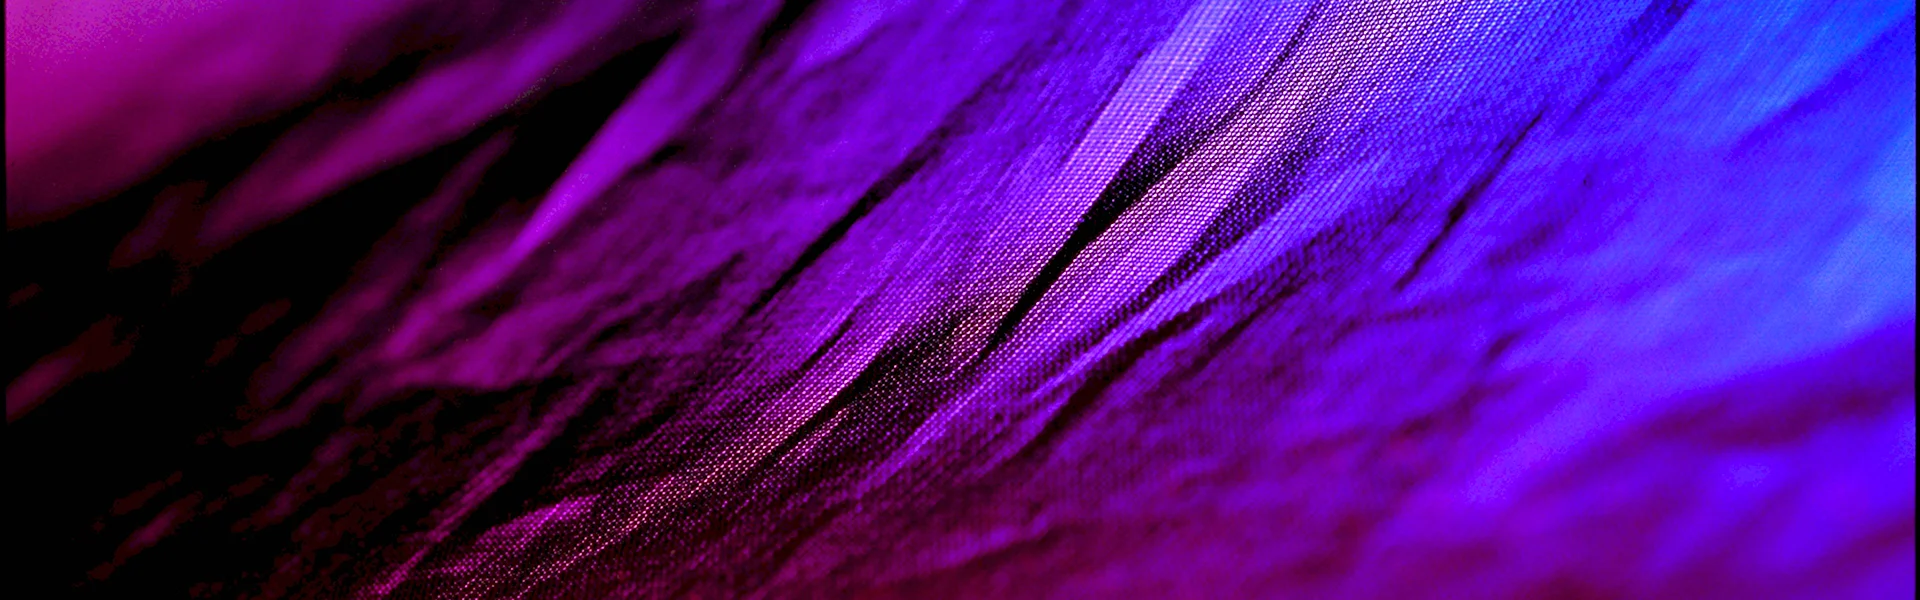 Фиолетовый баннер